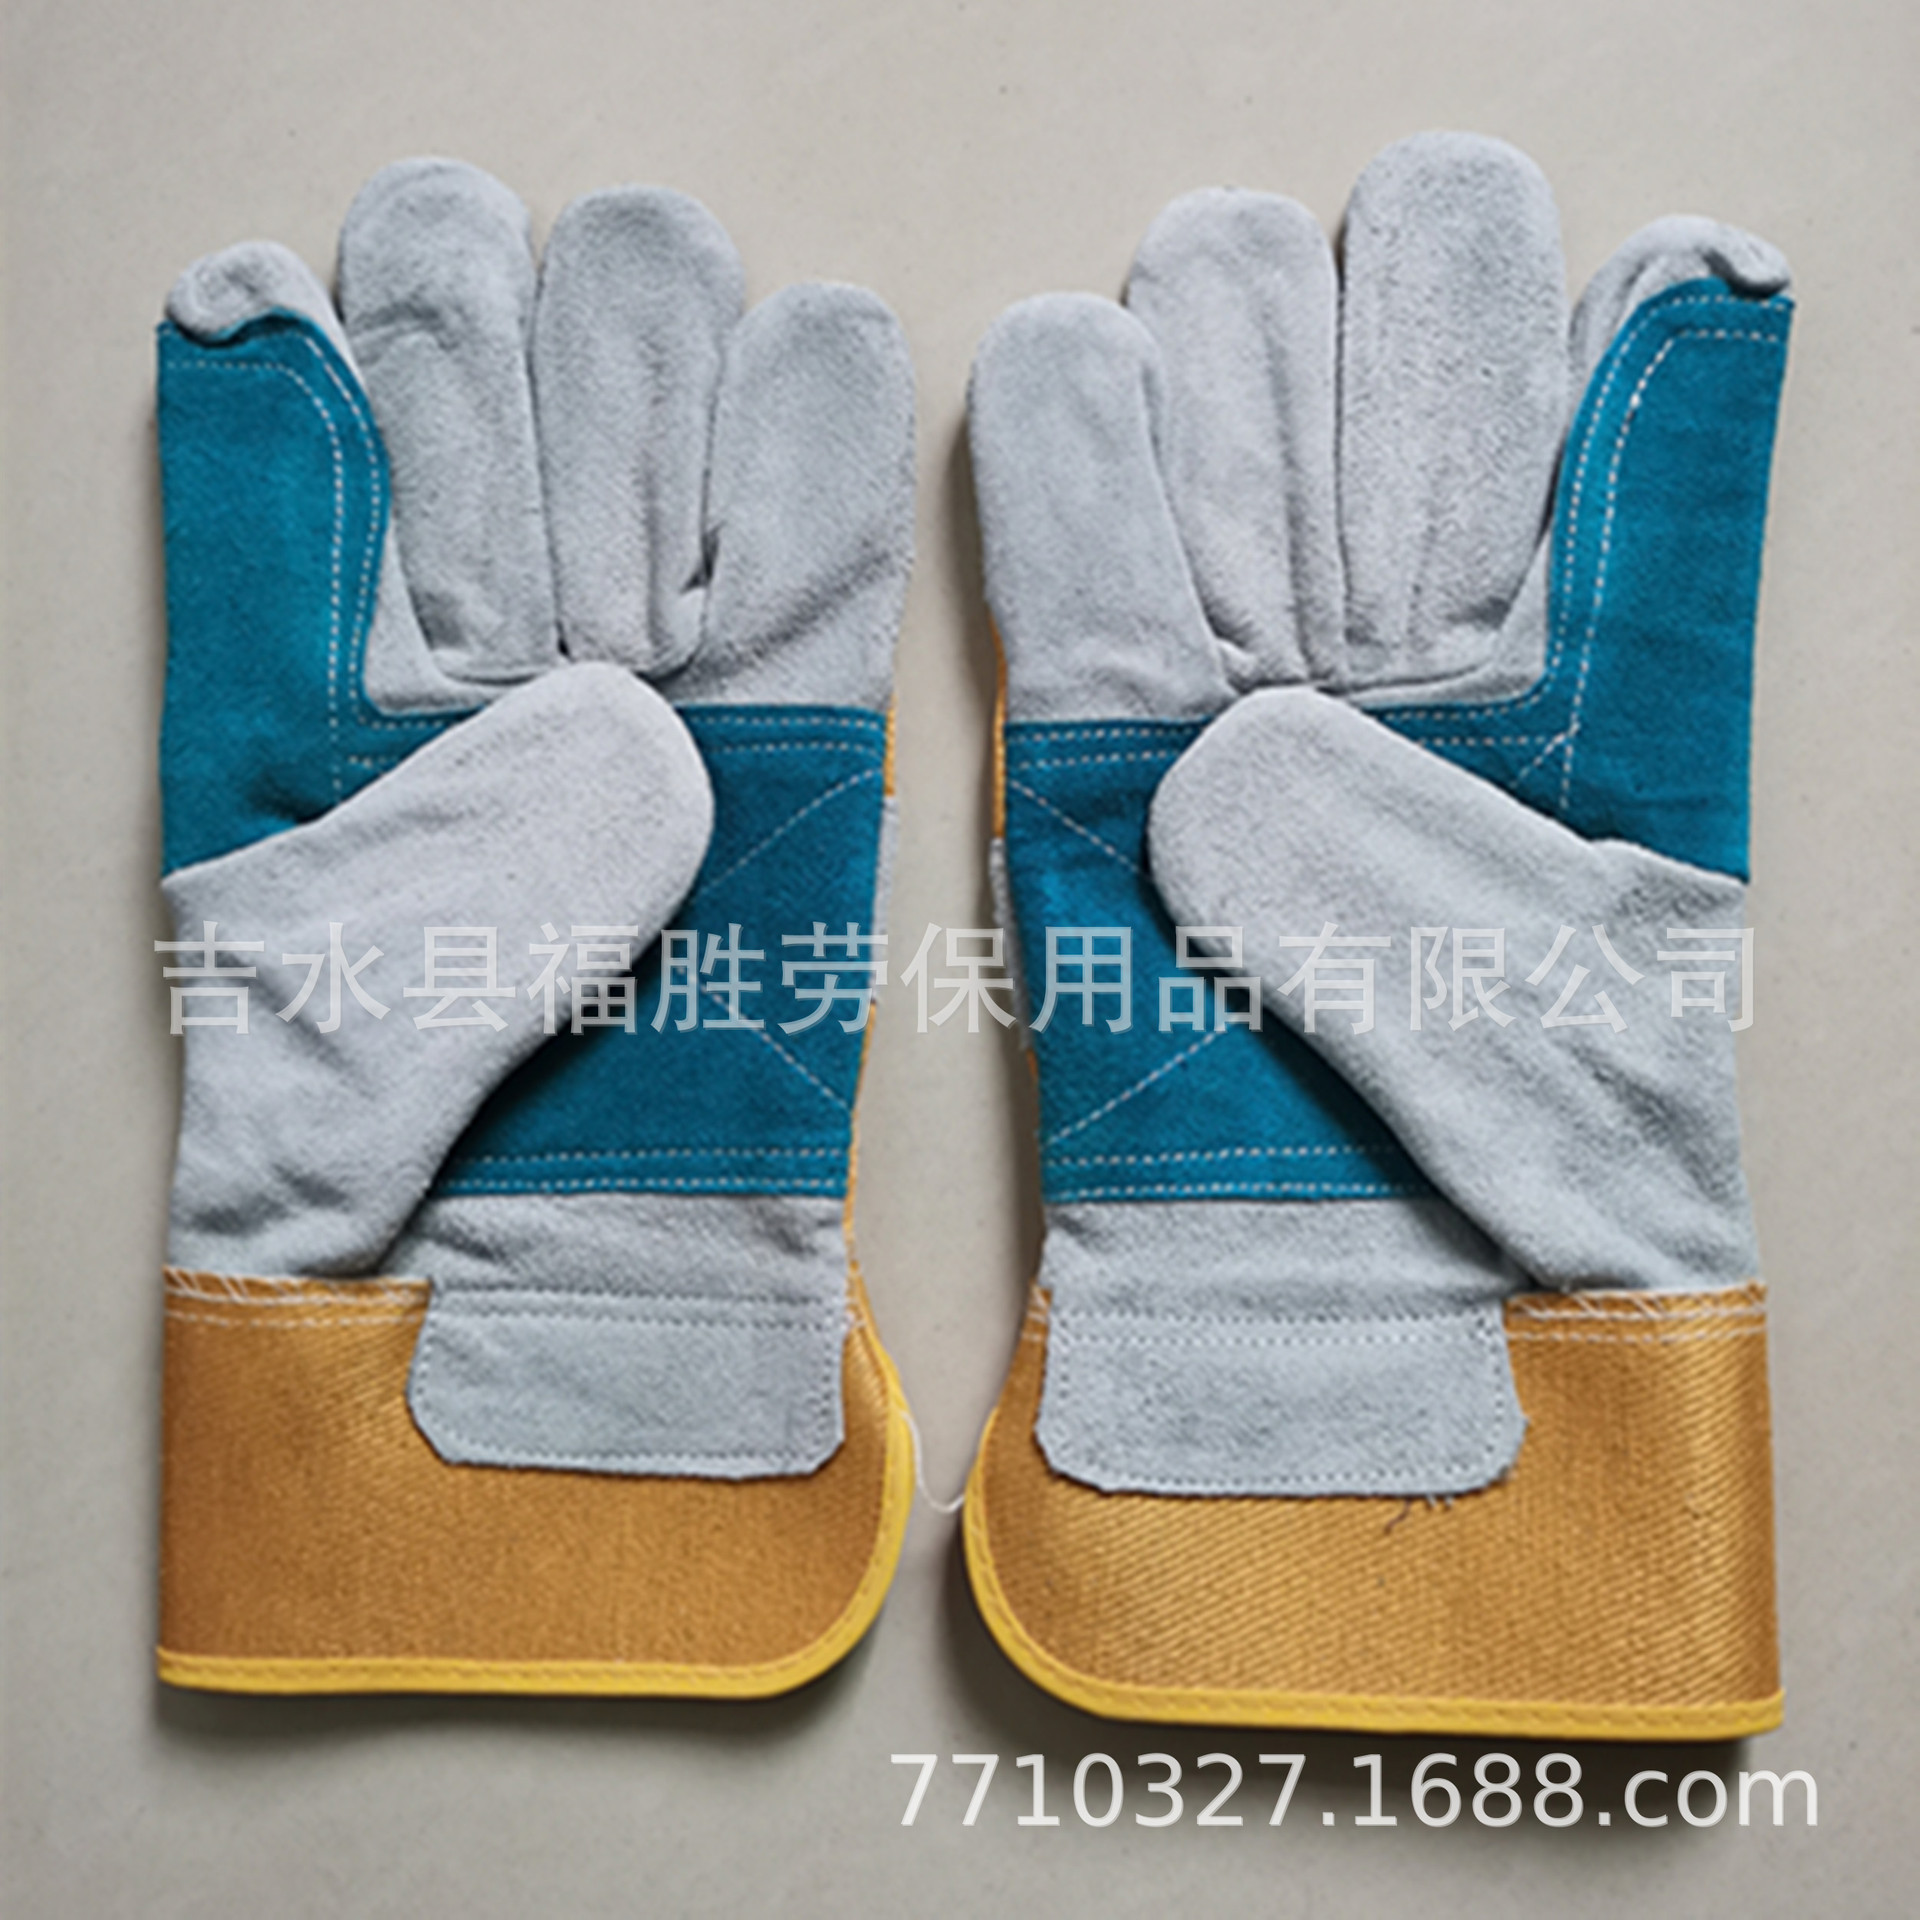 厂家优惠供应定做CE认证10.5英寸手掌绿色牛皮加托手套|ms